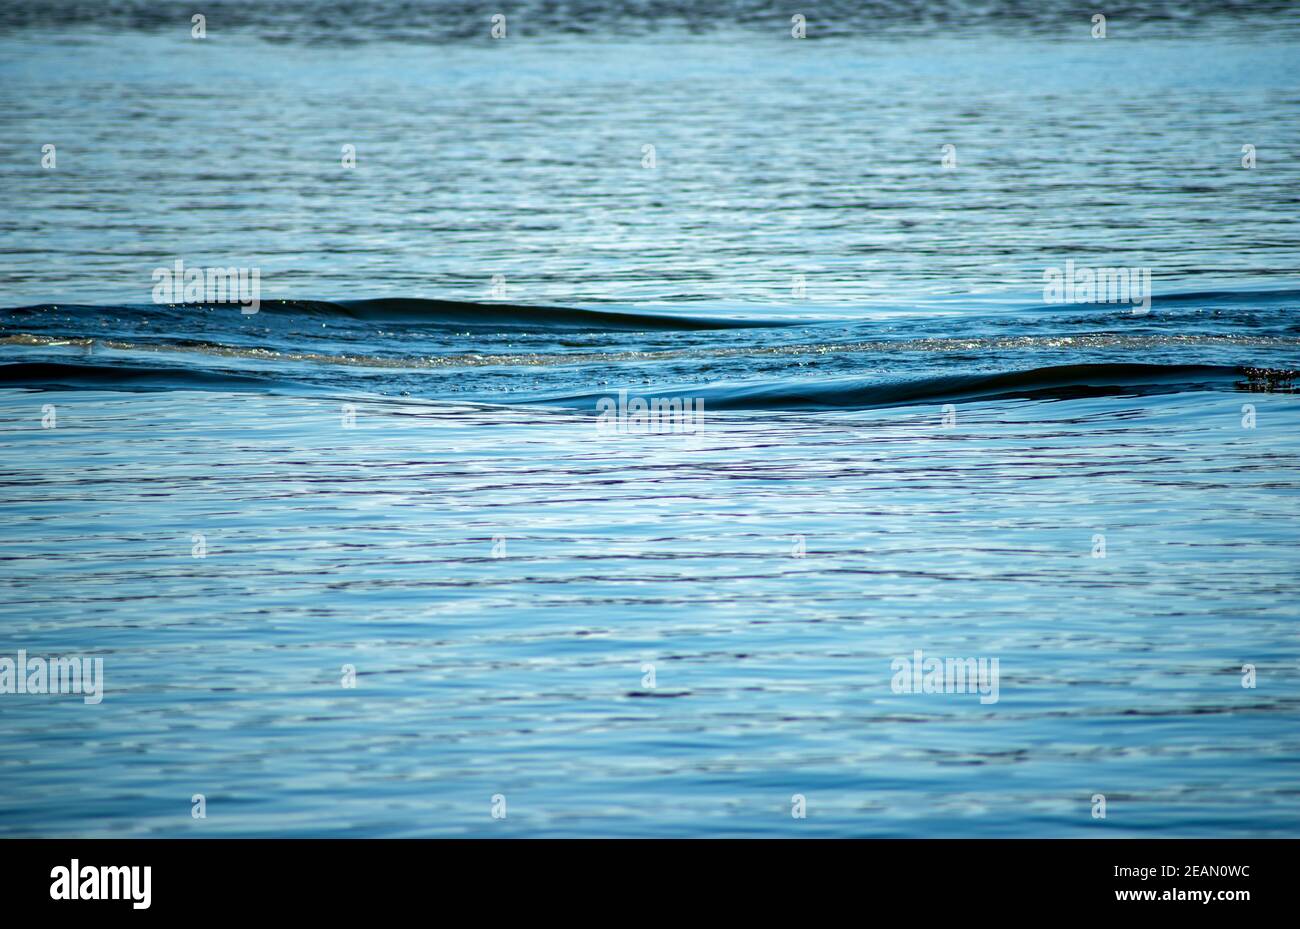 Il risveglio increspa striature su una tranquilla superficie blu dell'acqua Foto Stock